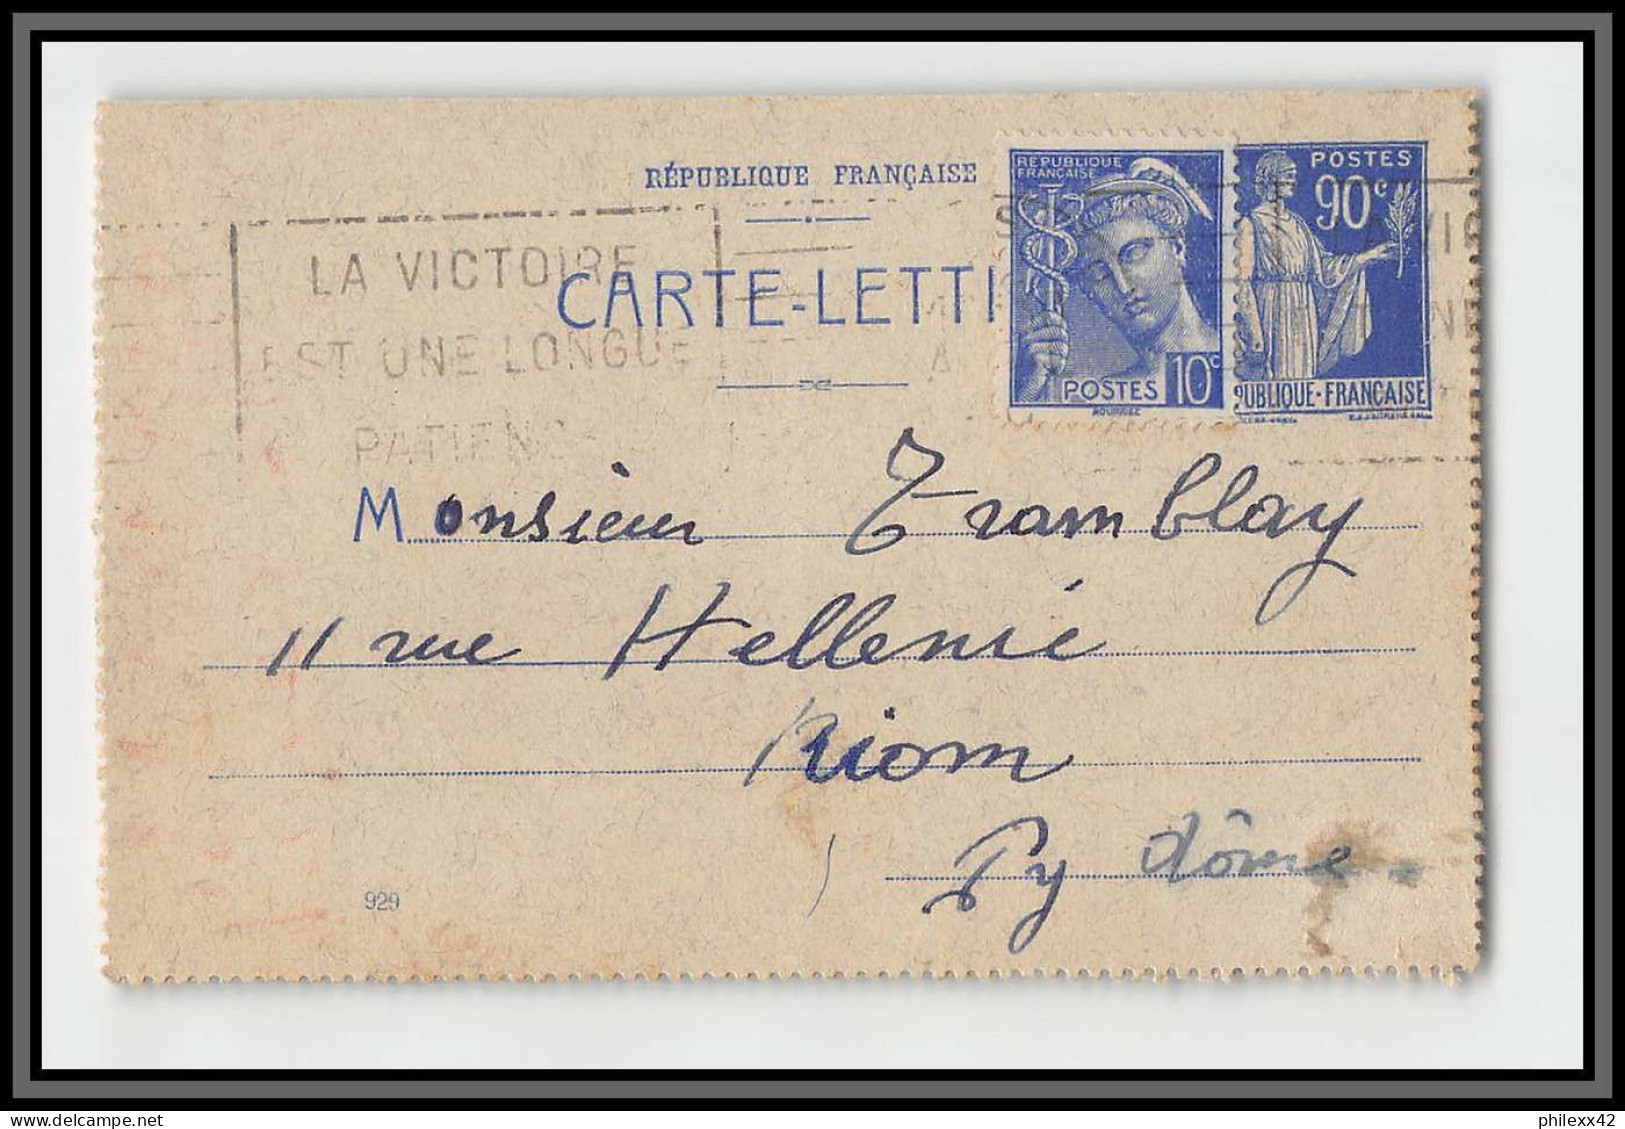 75160 90c Bleu PAI F2 Date 929 Krag Paris Riom 1940 Paix Entier Postal Stationery Carte Lettre France - Cartoline-lettere